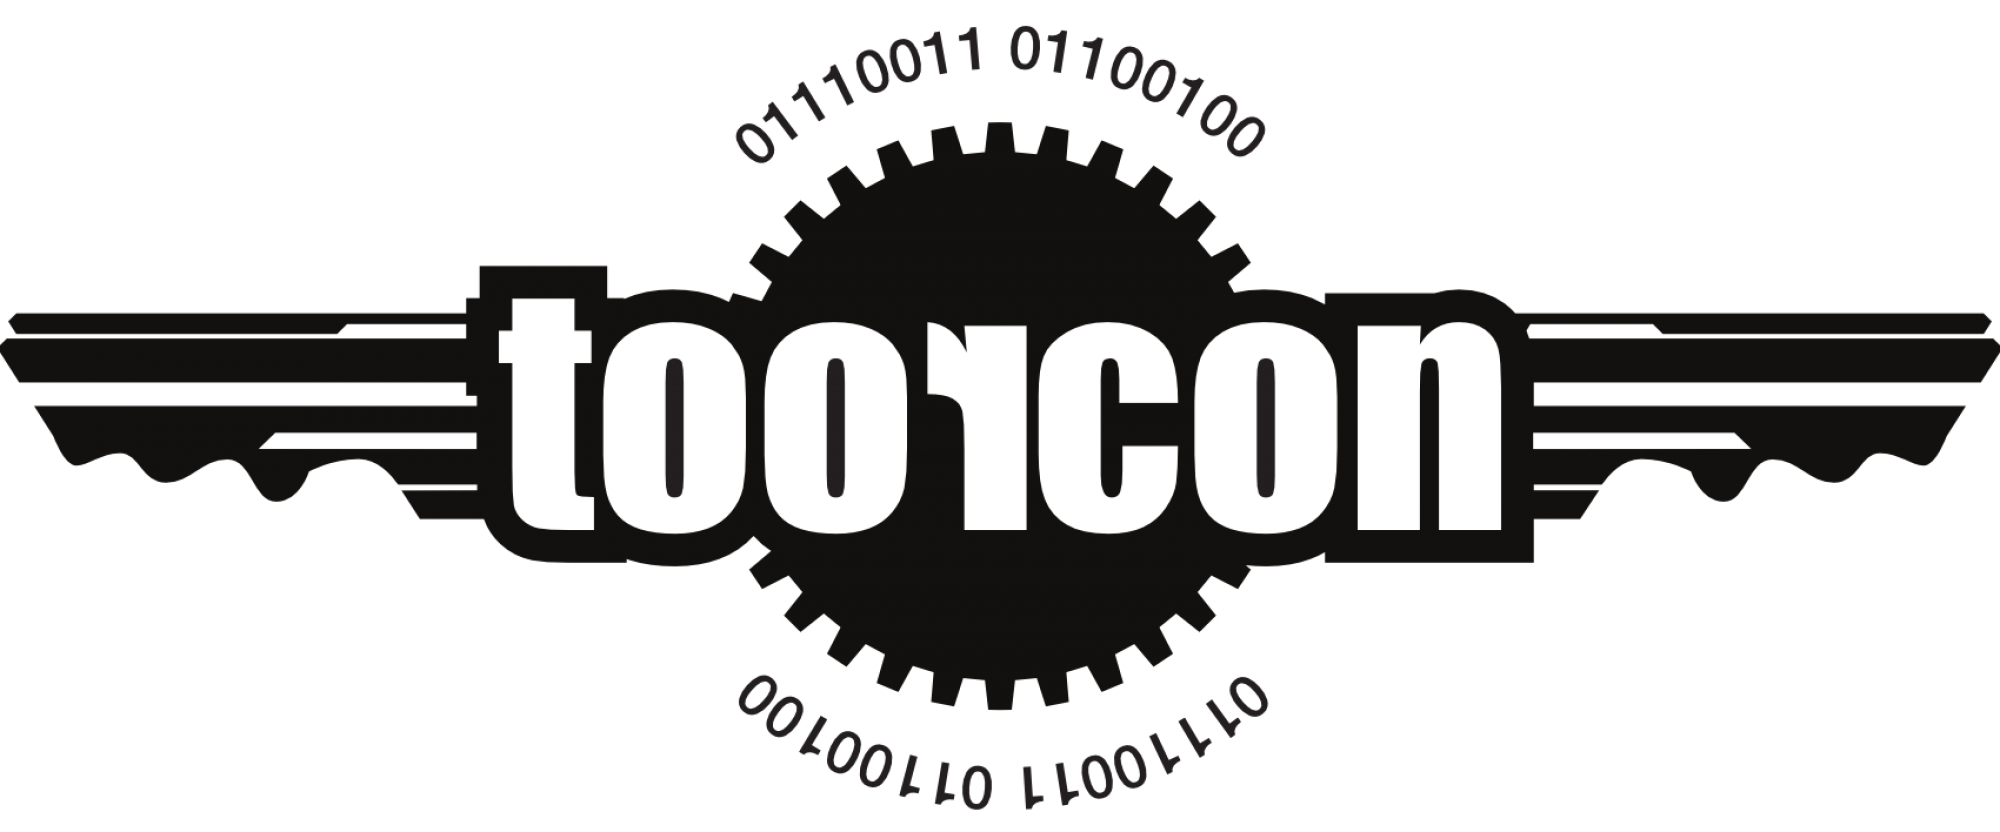 ToorCon event logo